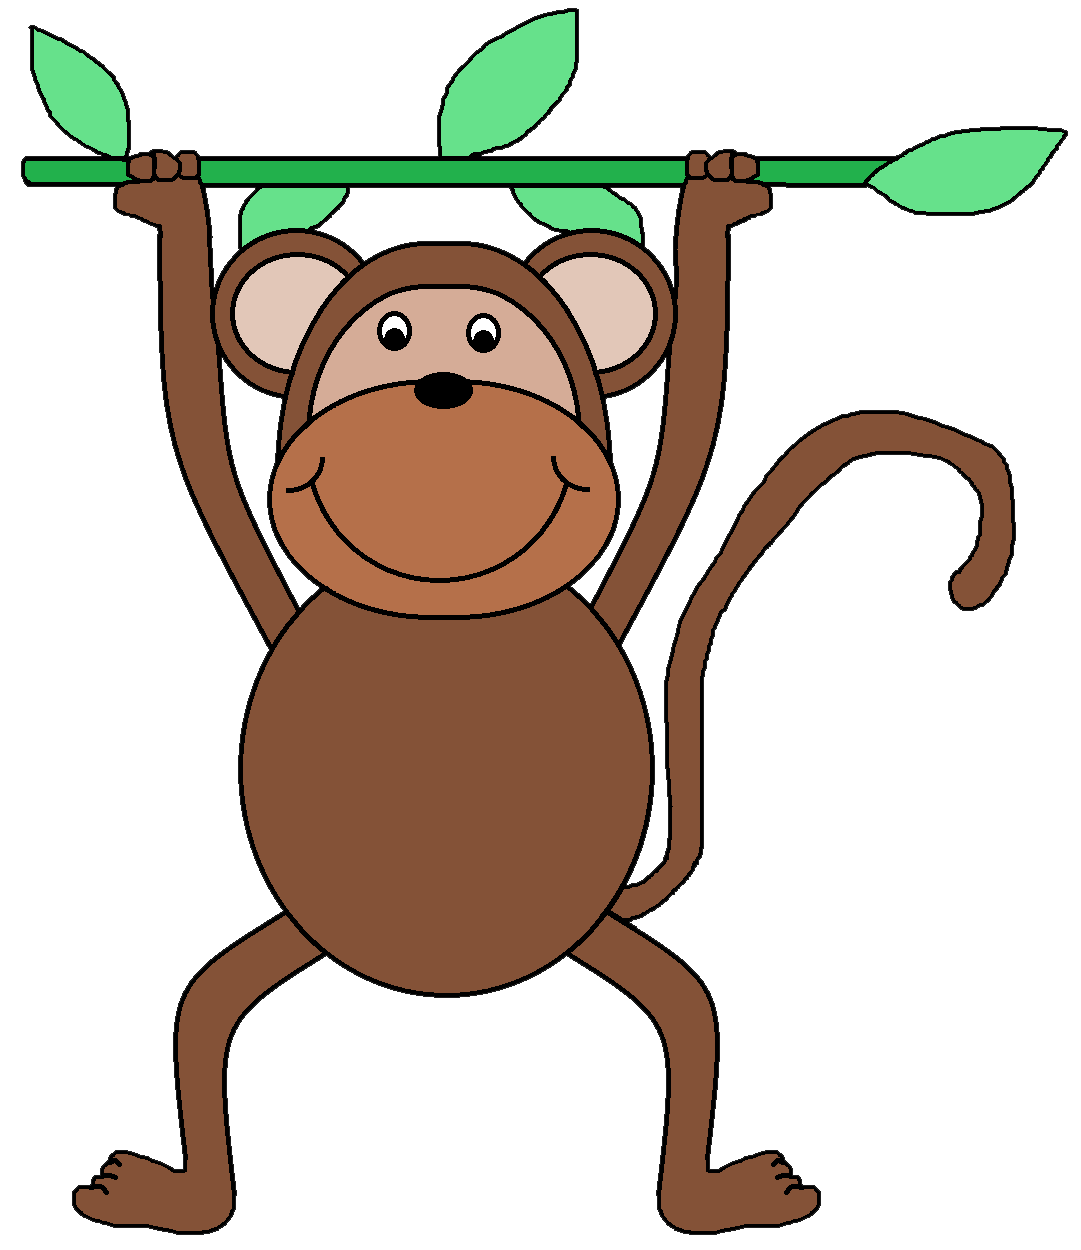 Monkey clip art images | Clipart Panda - Free Clipart Images